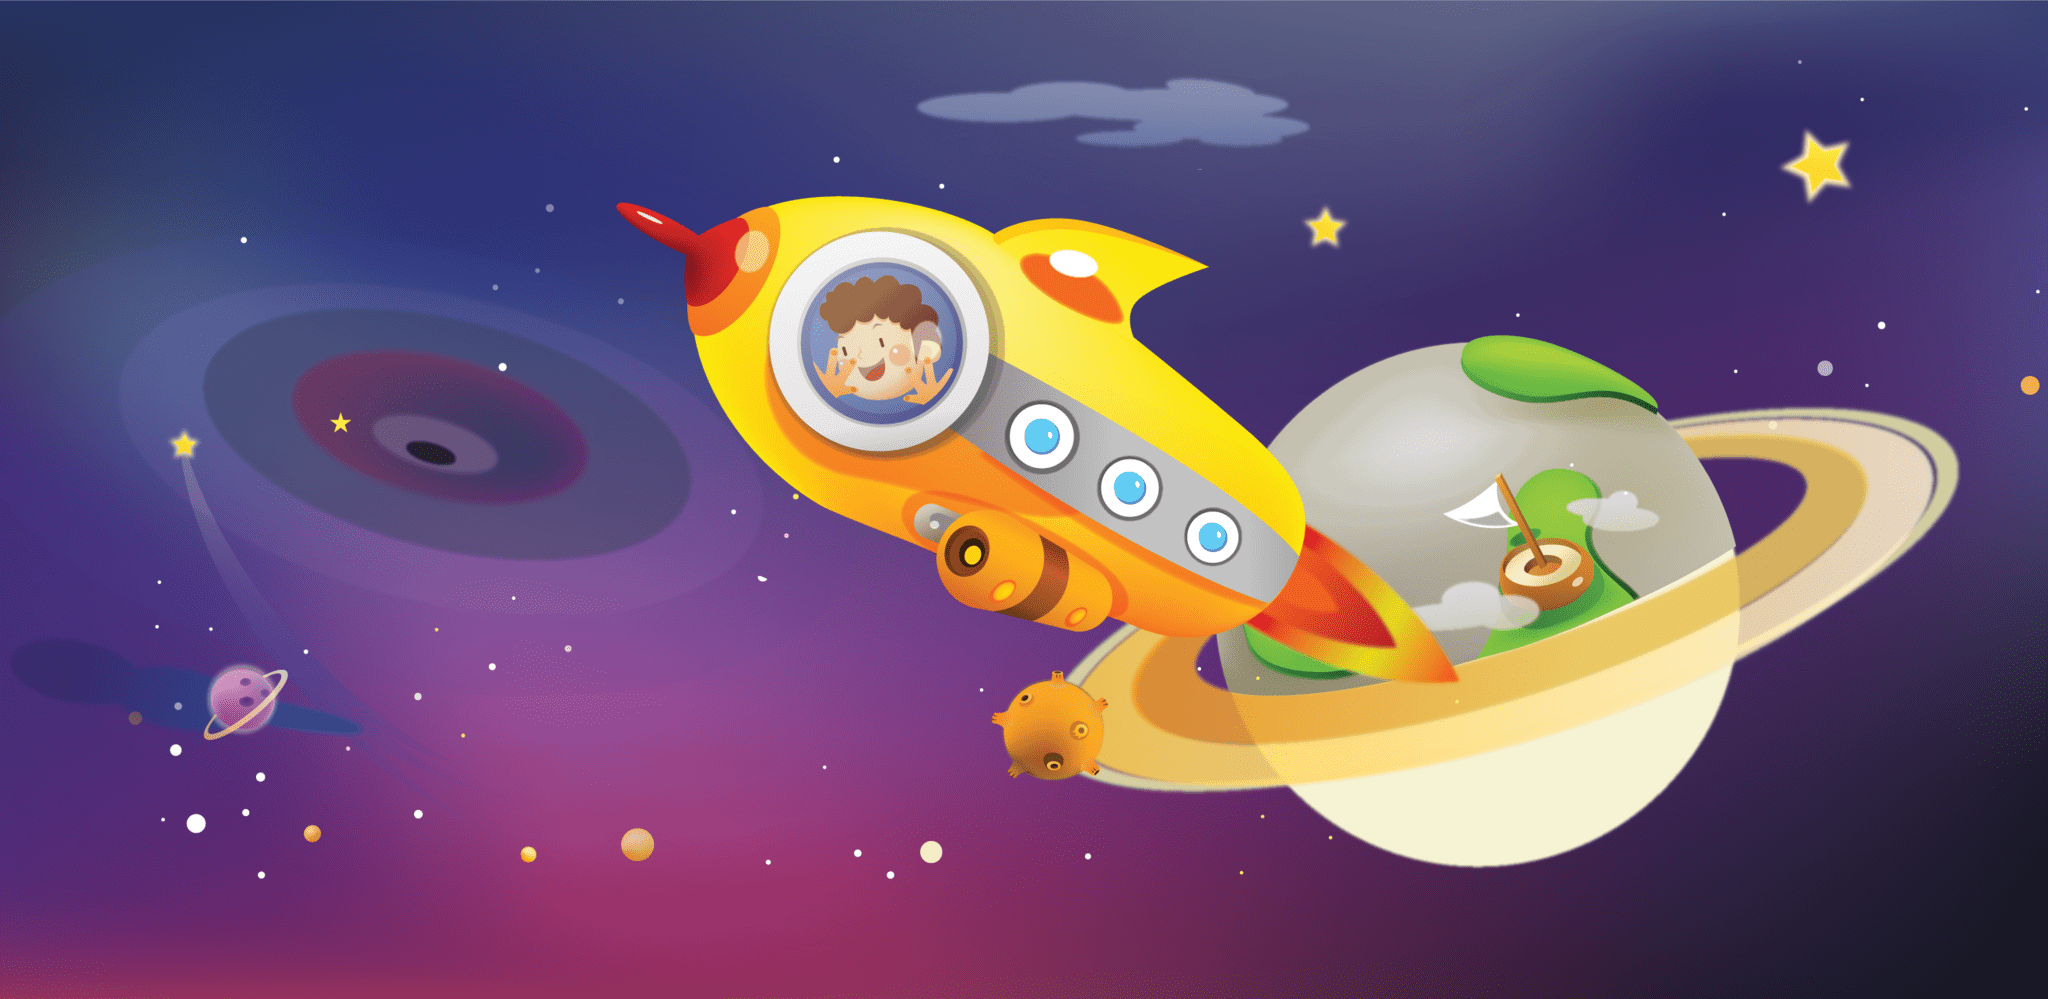 Игра путешествие в космос. Детям о космосе. Космическое путешествие для дошкольников. Космическая тематика для детей. Картинки на тему космос для детей.